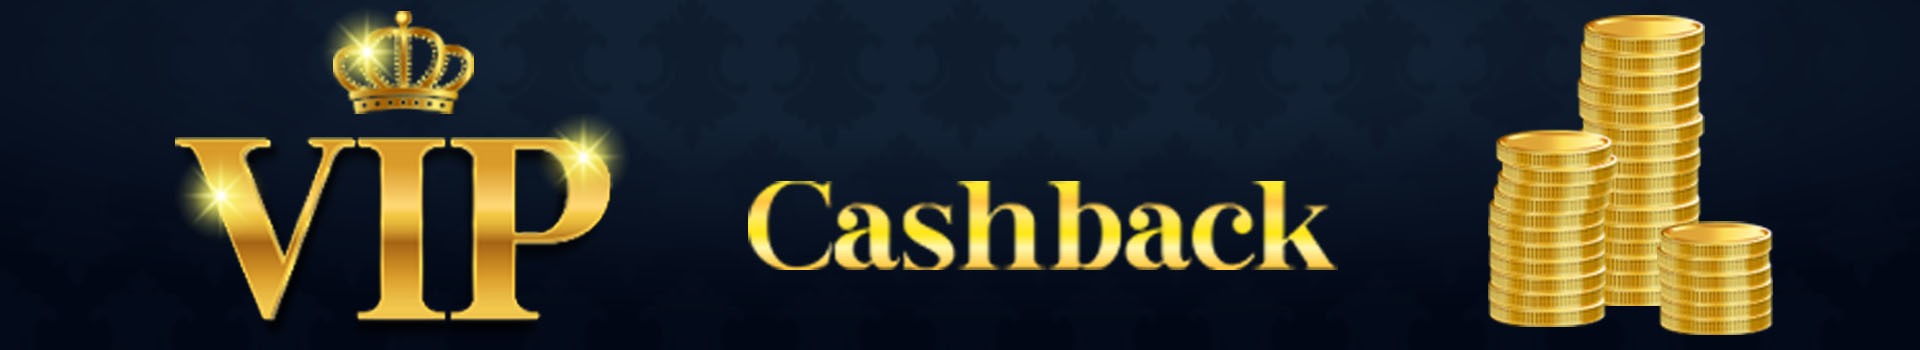 vip-cashback banner